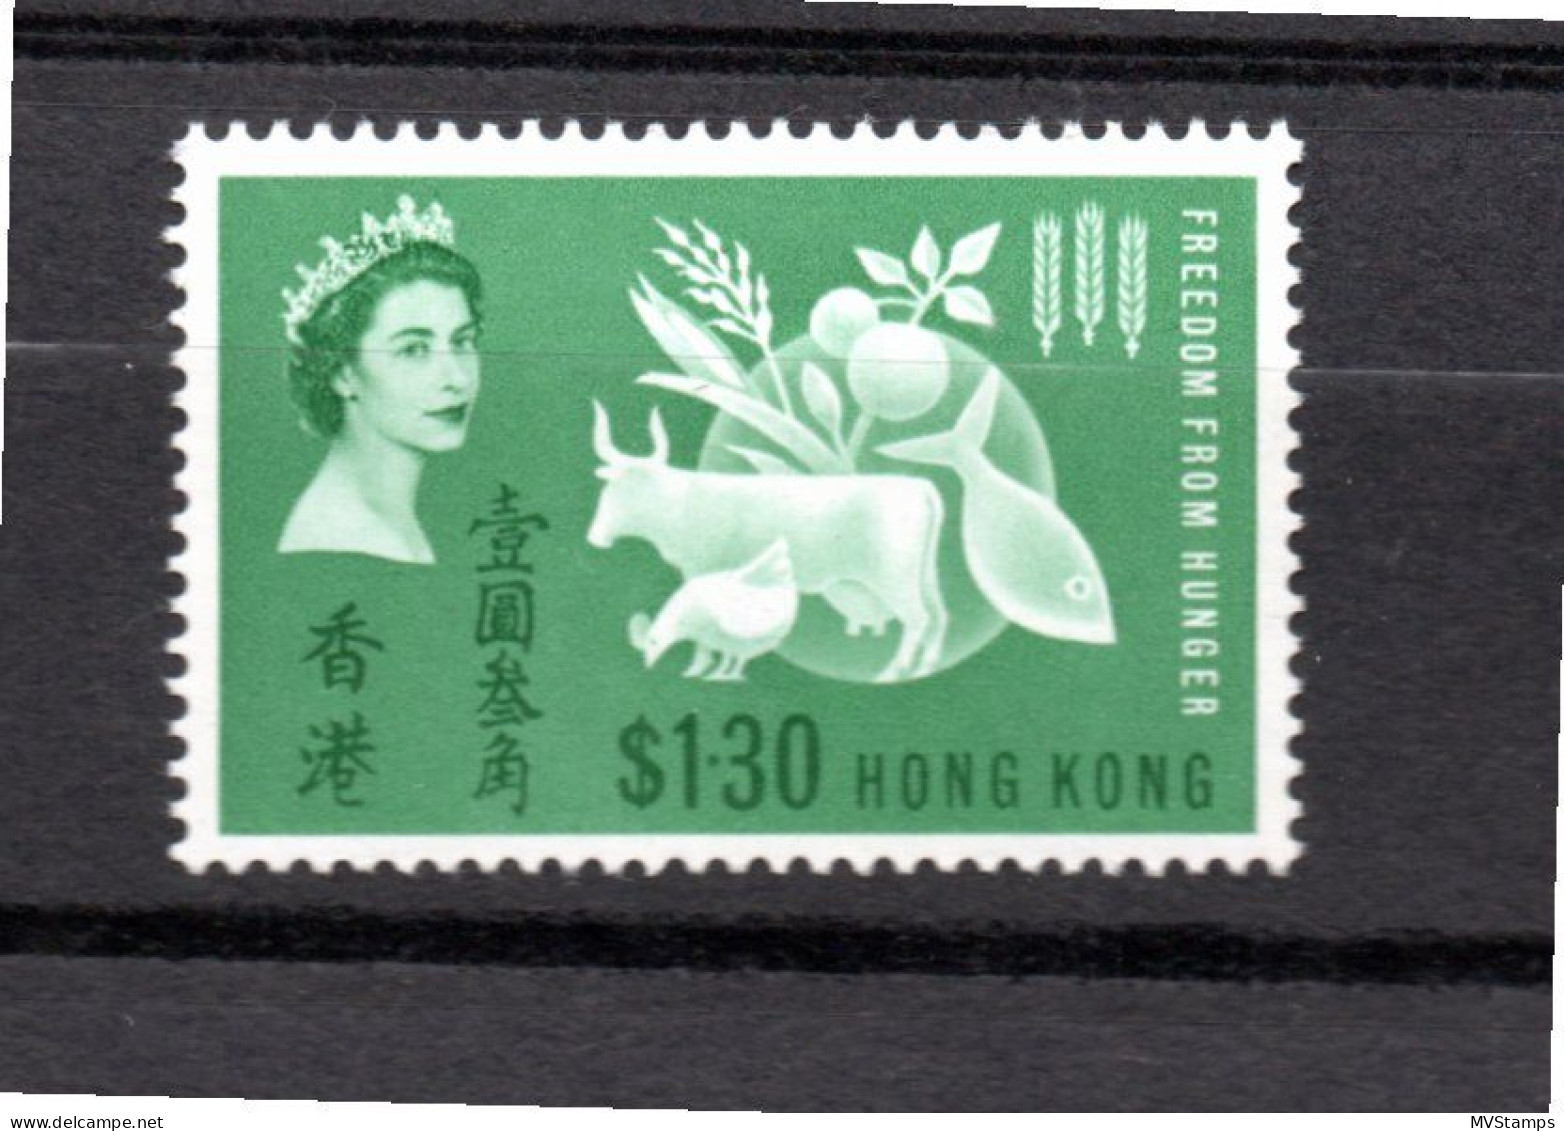 Hong Kong 1963 Hunger/Cow $1.30 Stamp (Michel 211) MNH - Ongebruikt